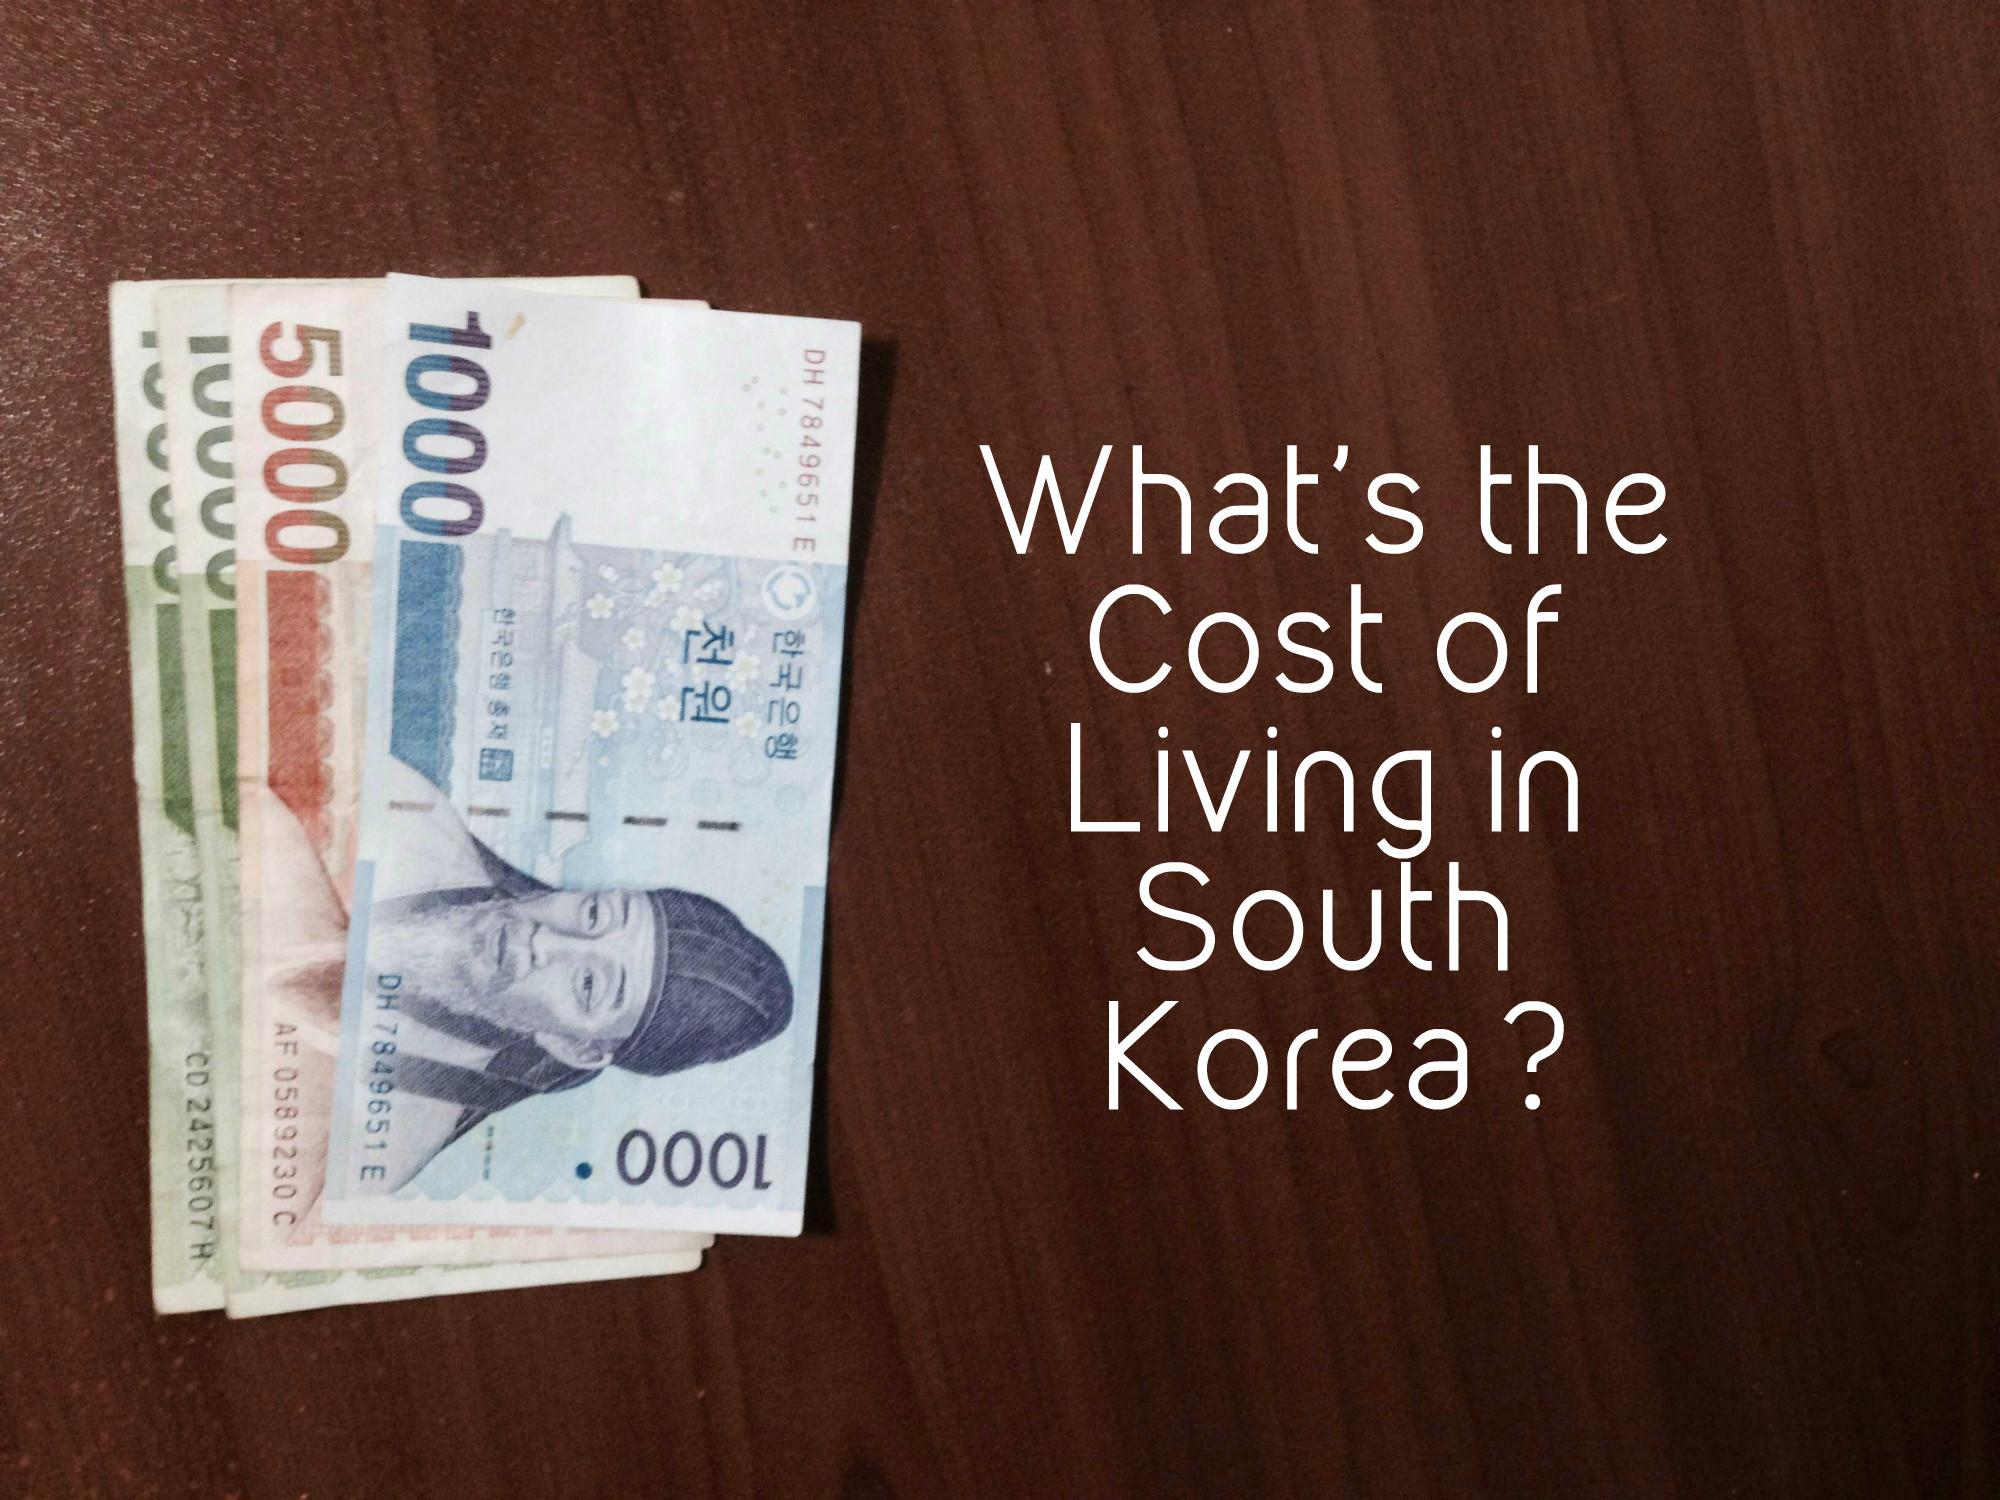 ما هي تكلفة الحياة اليومية في كوريا الجنوبية؟